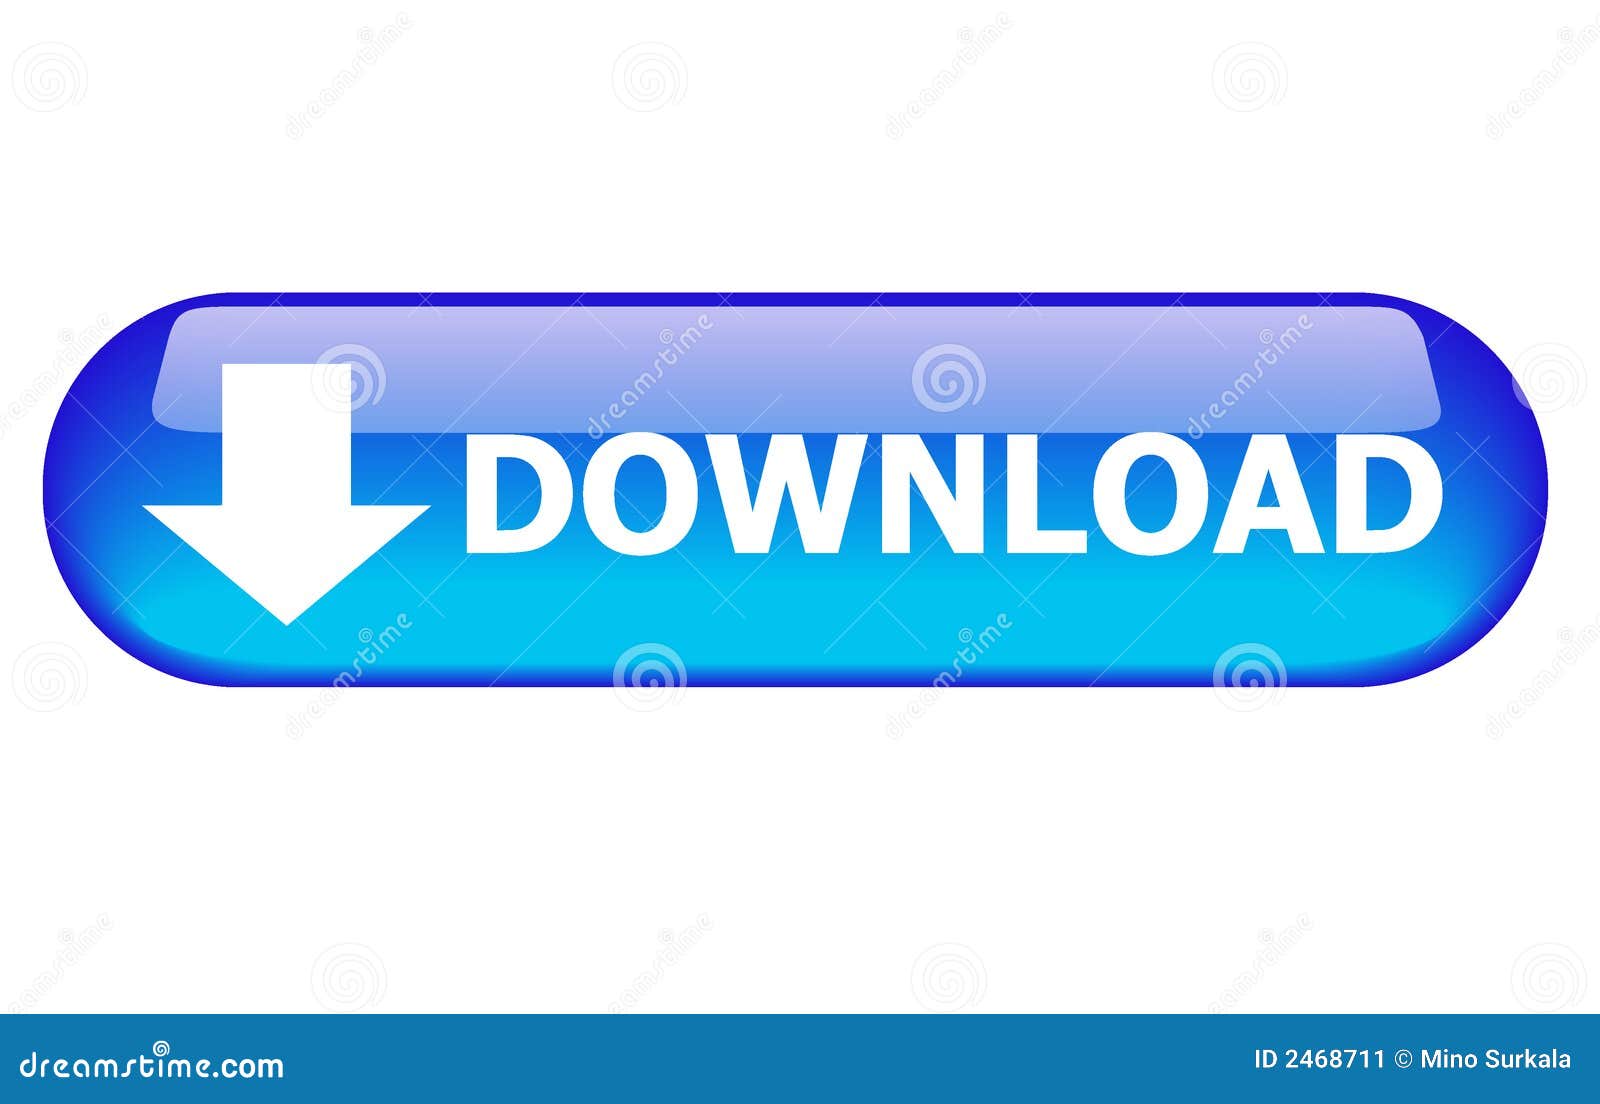 download fundamentals of